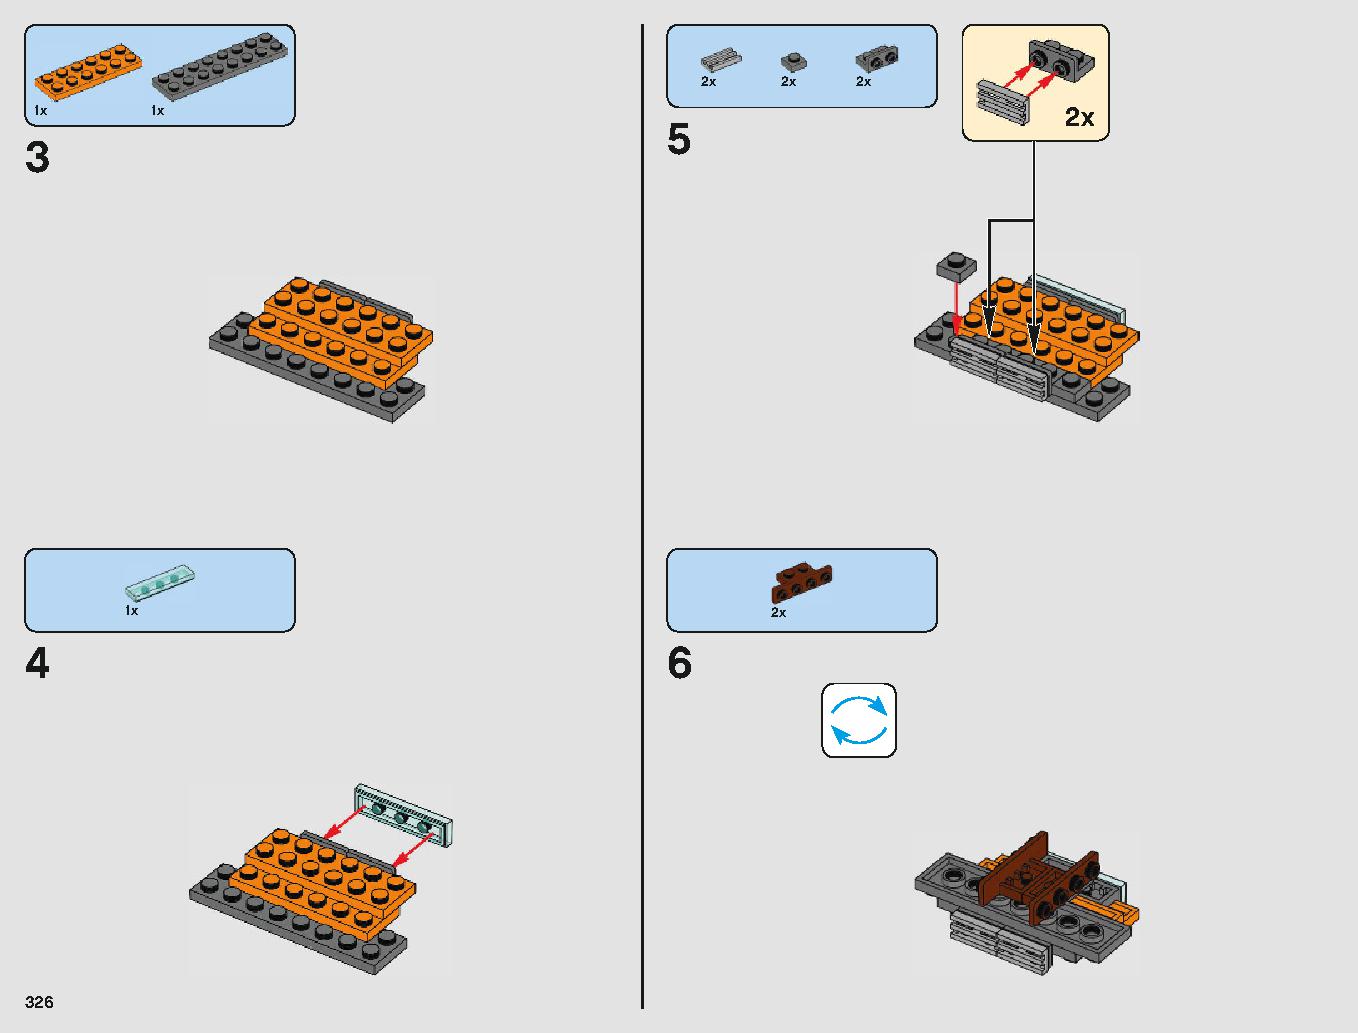 クラウド・シティ 75222 レゴの商品情報 レゴの説明書・組立方法 326 page